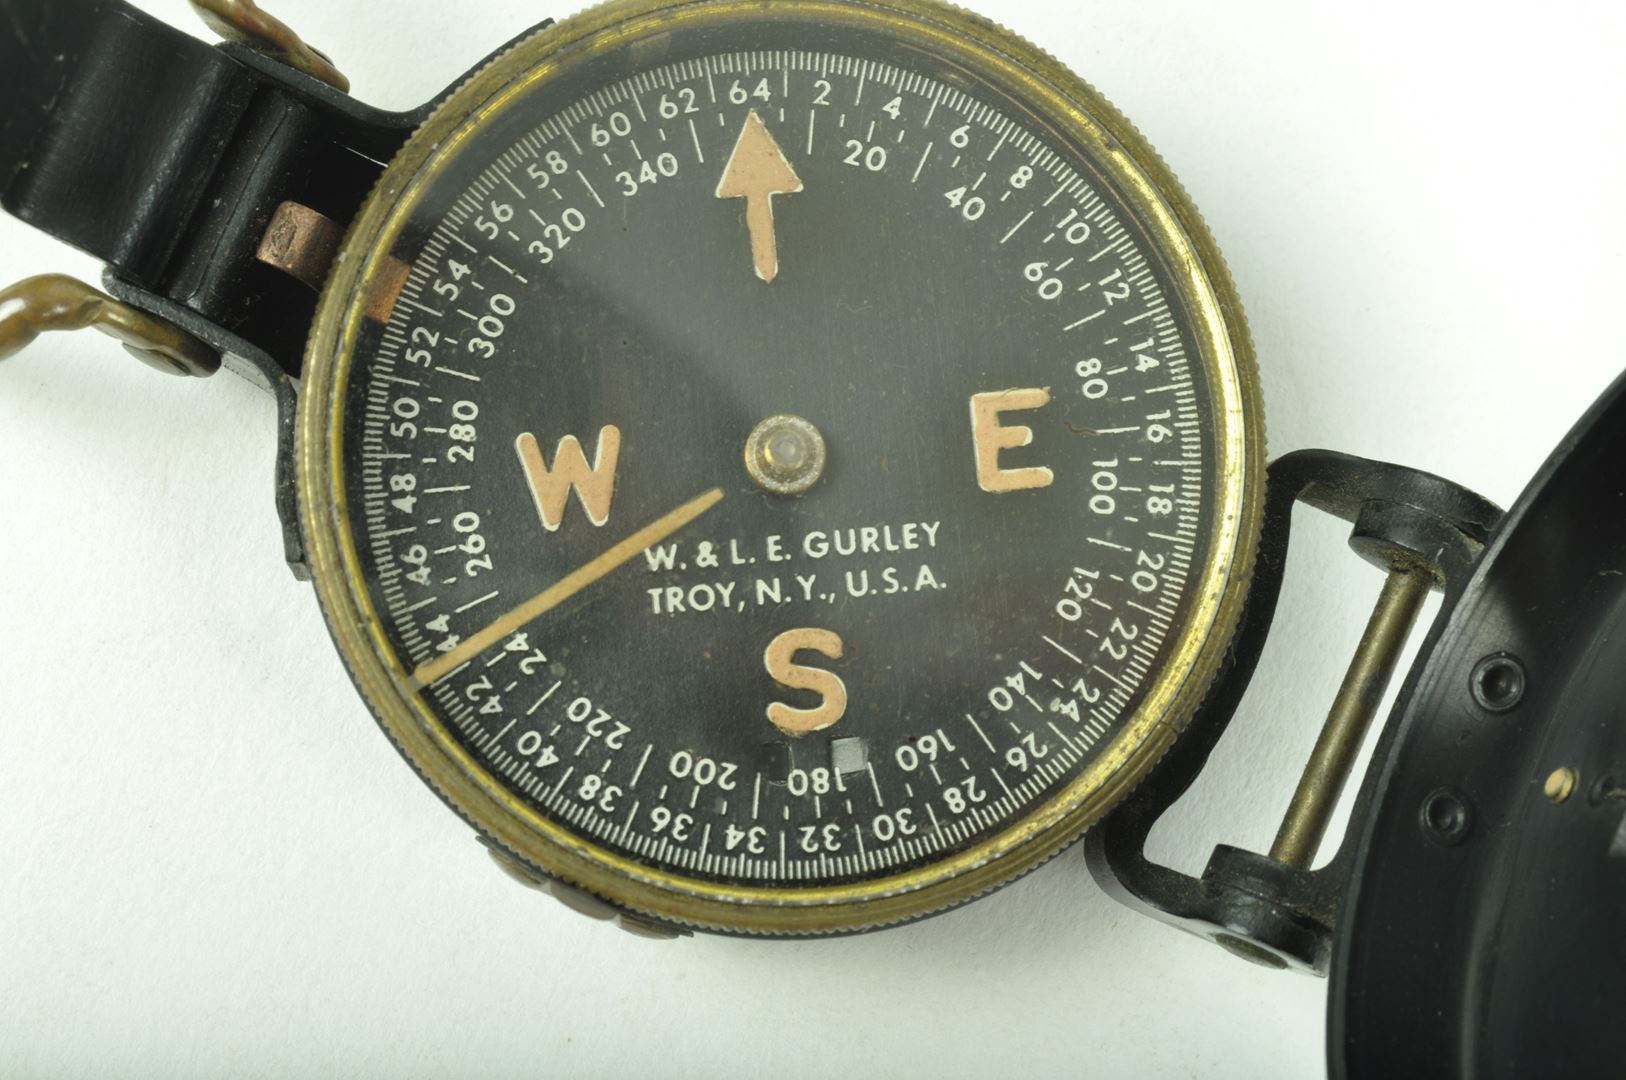 Boussole de marche, W. & L. E. Gurley, avec pochette imprégnée